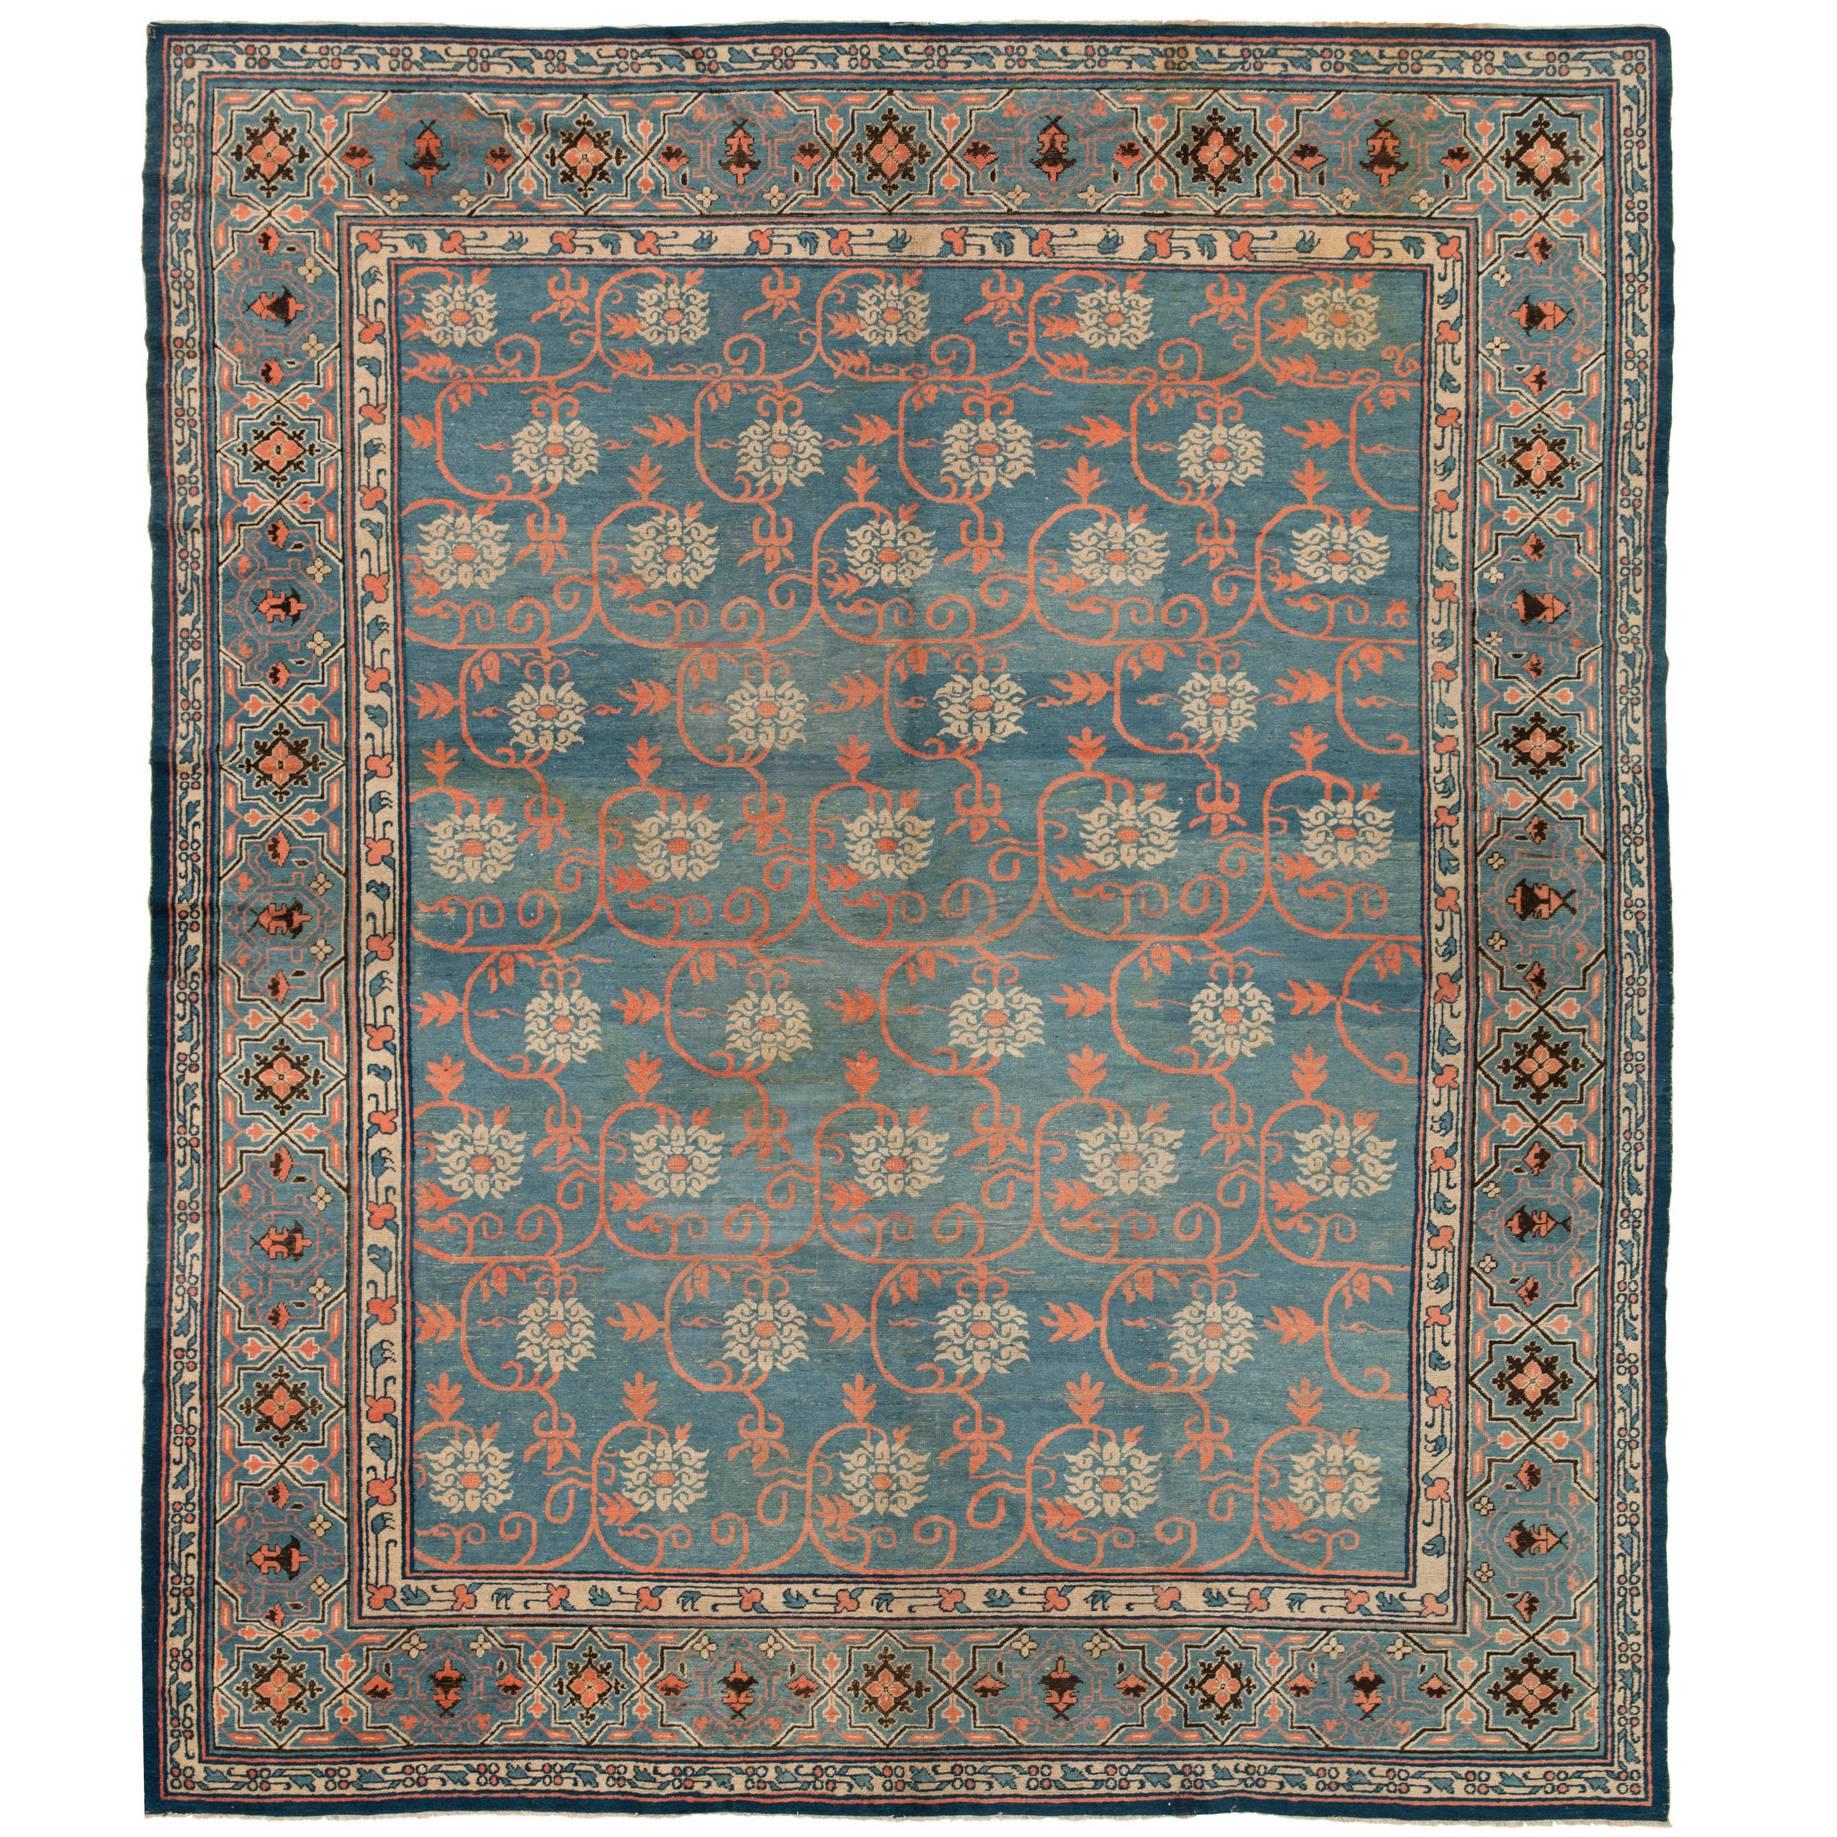 19th Century Chinese Carpet